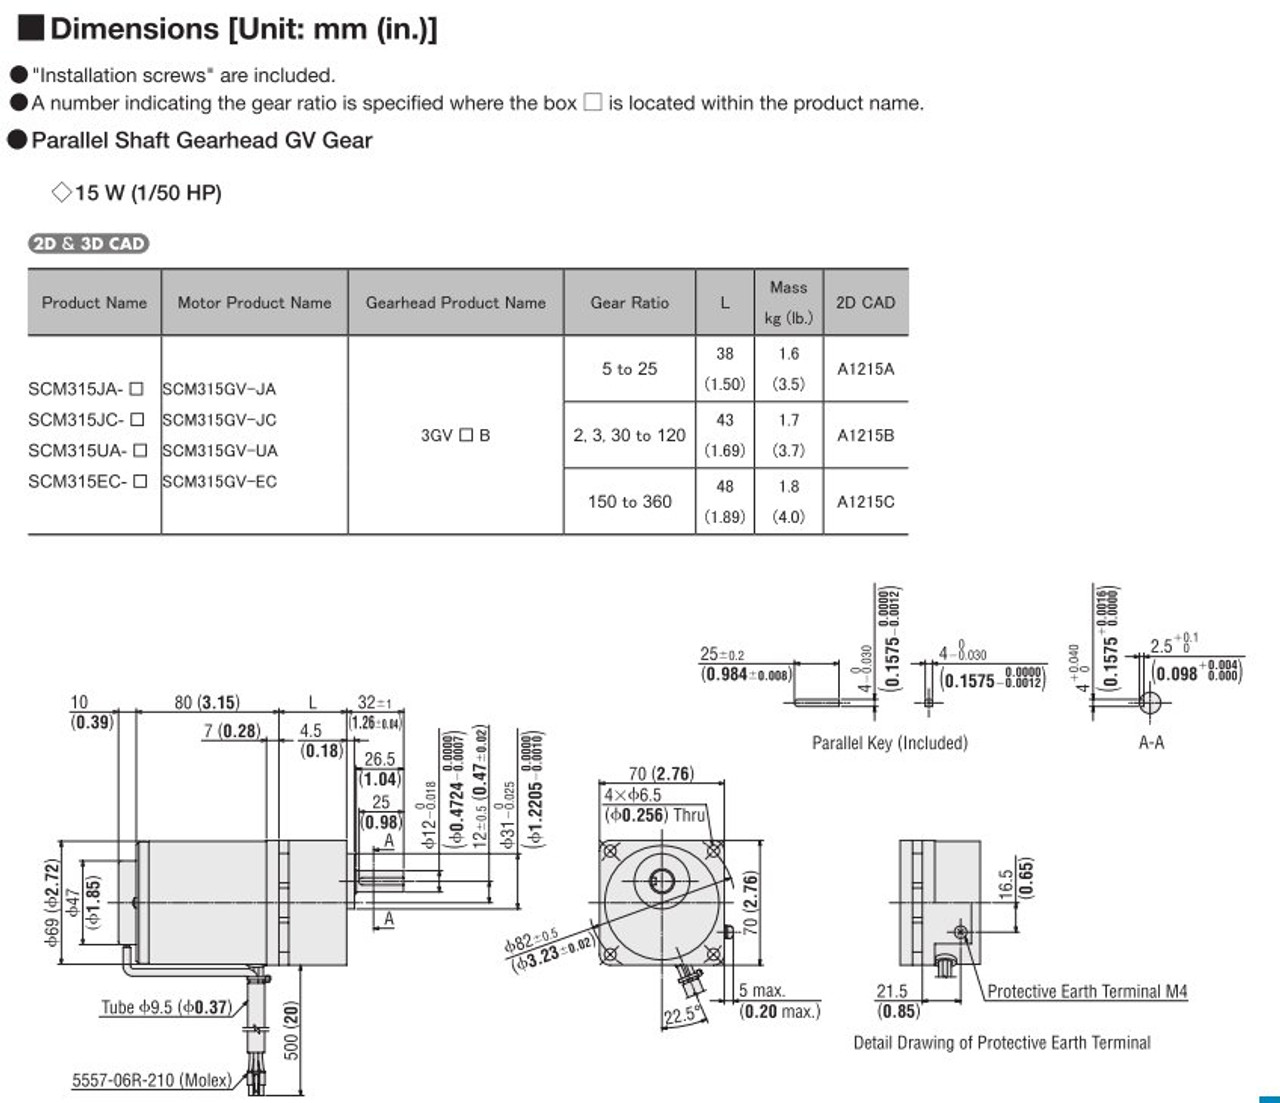 SCM315EC-18 / US2D15-EC-CC - Dimensions